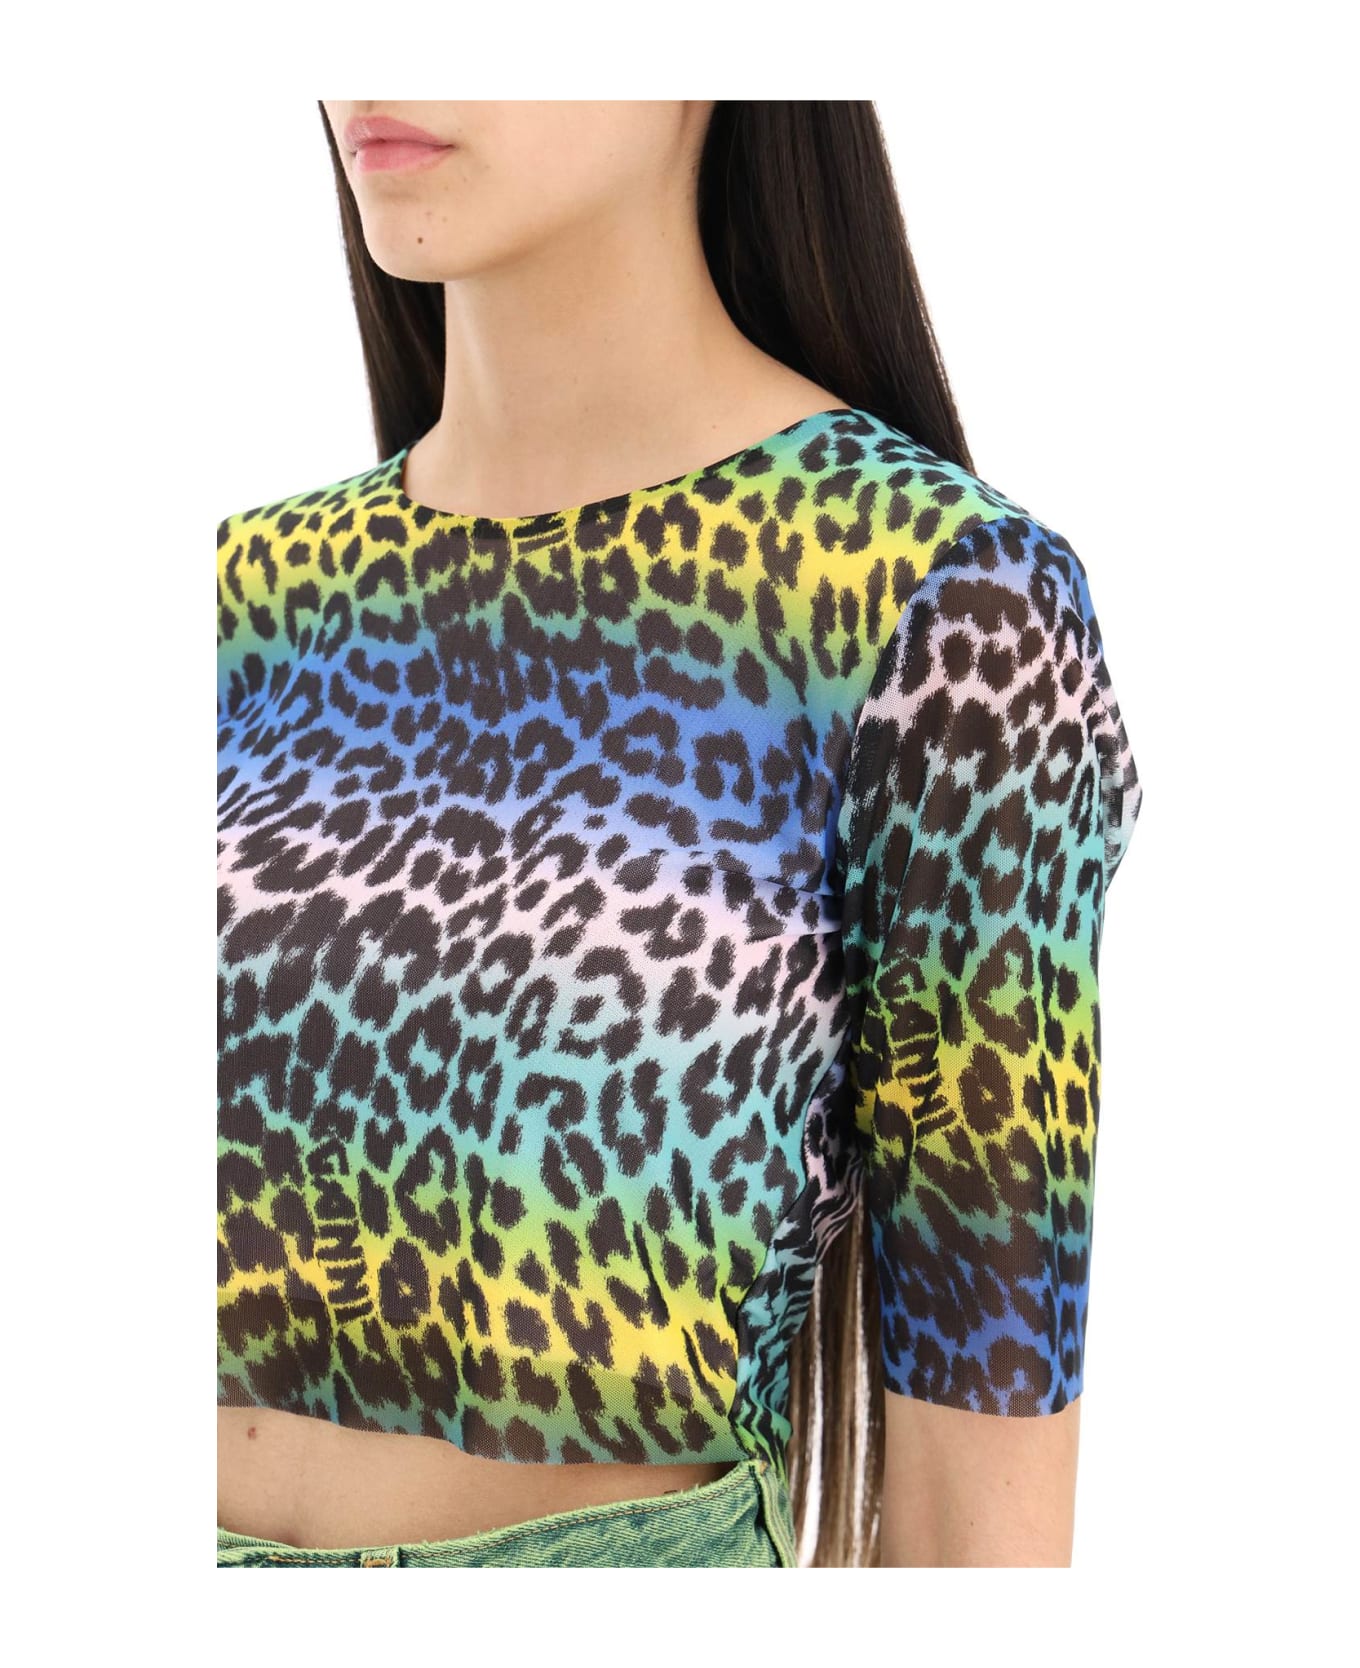 Ganni Multicolor Leopard Print Crop Top - MULTICOLOUR